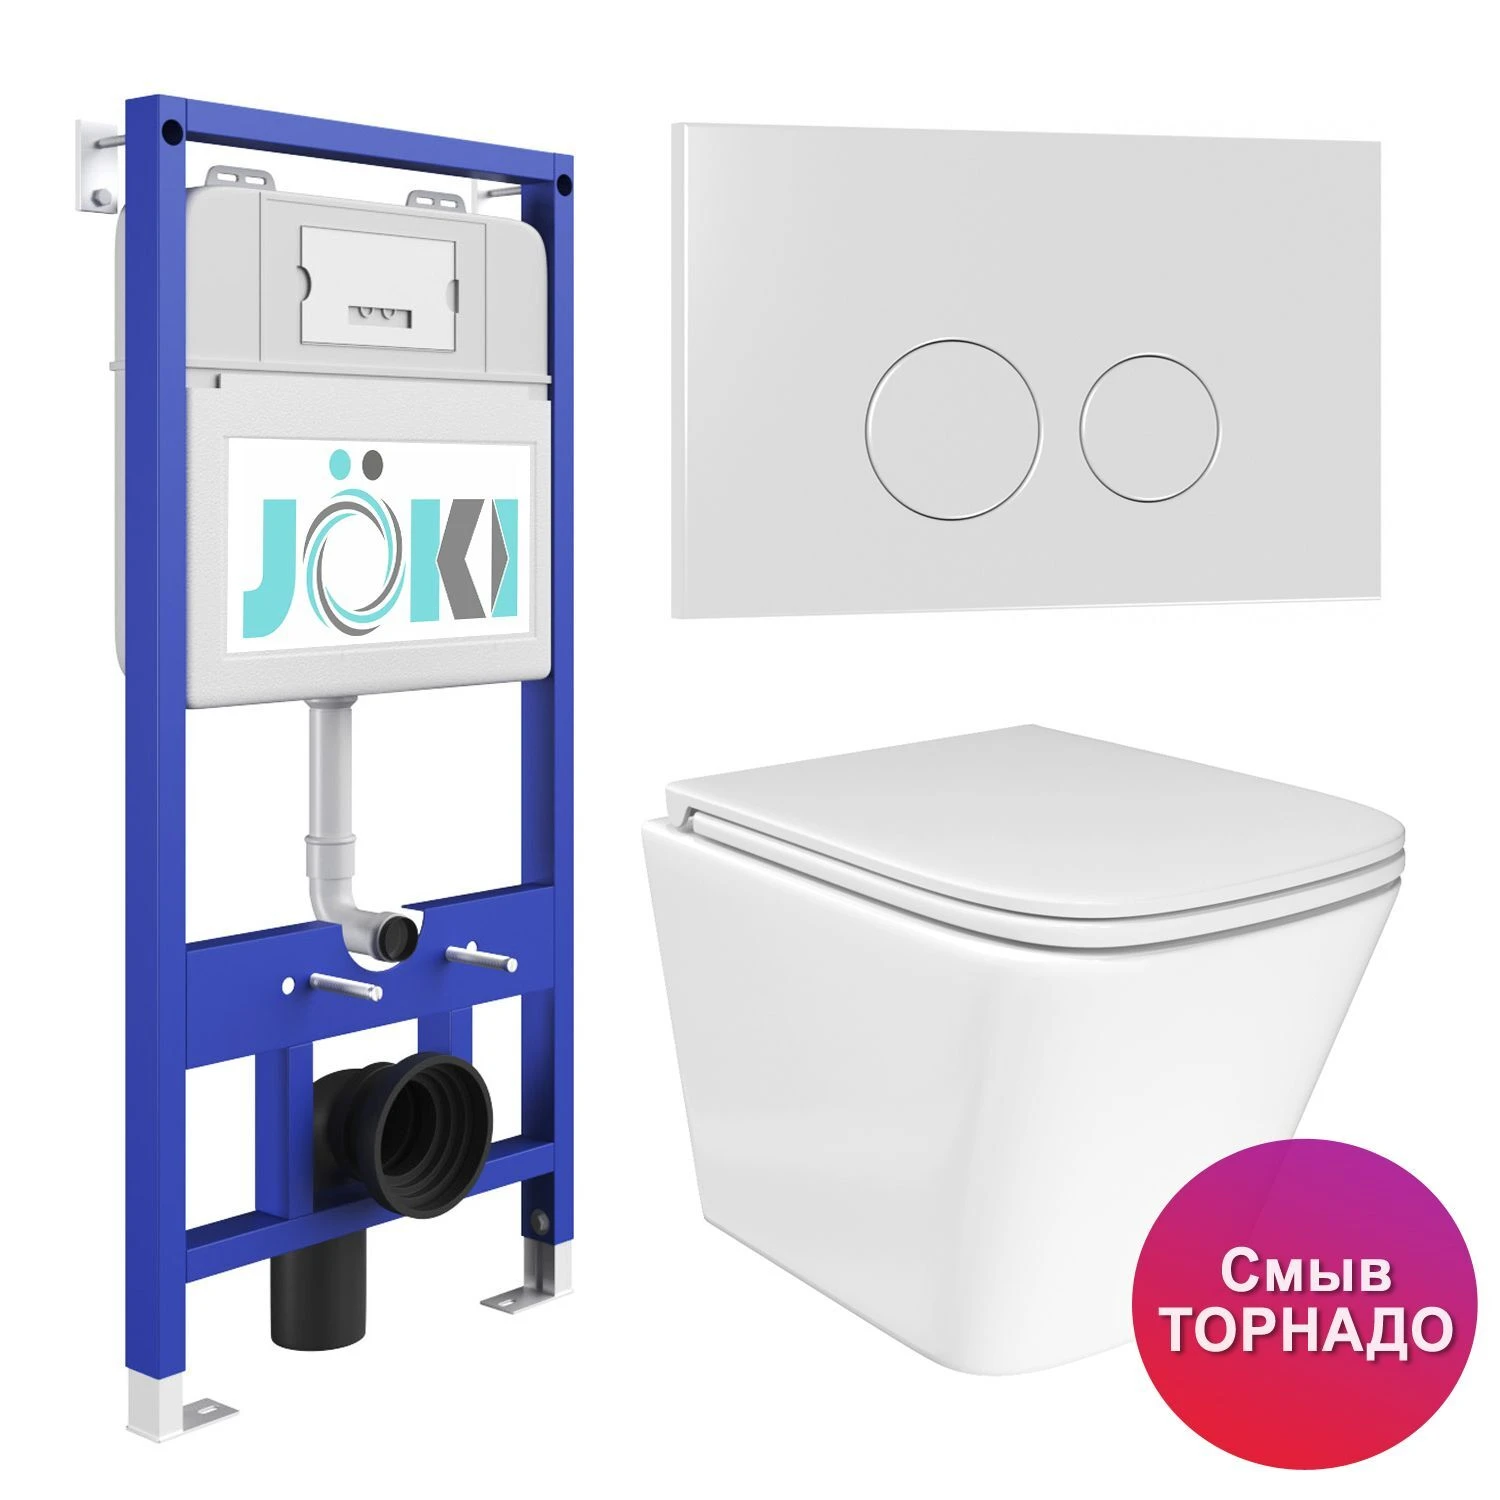 Комплект: JOKI Инсталляция JK01150+Кнопка JK019513WM белый+Verna T JK3031025 белый унитаз, смыв Торнадо